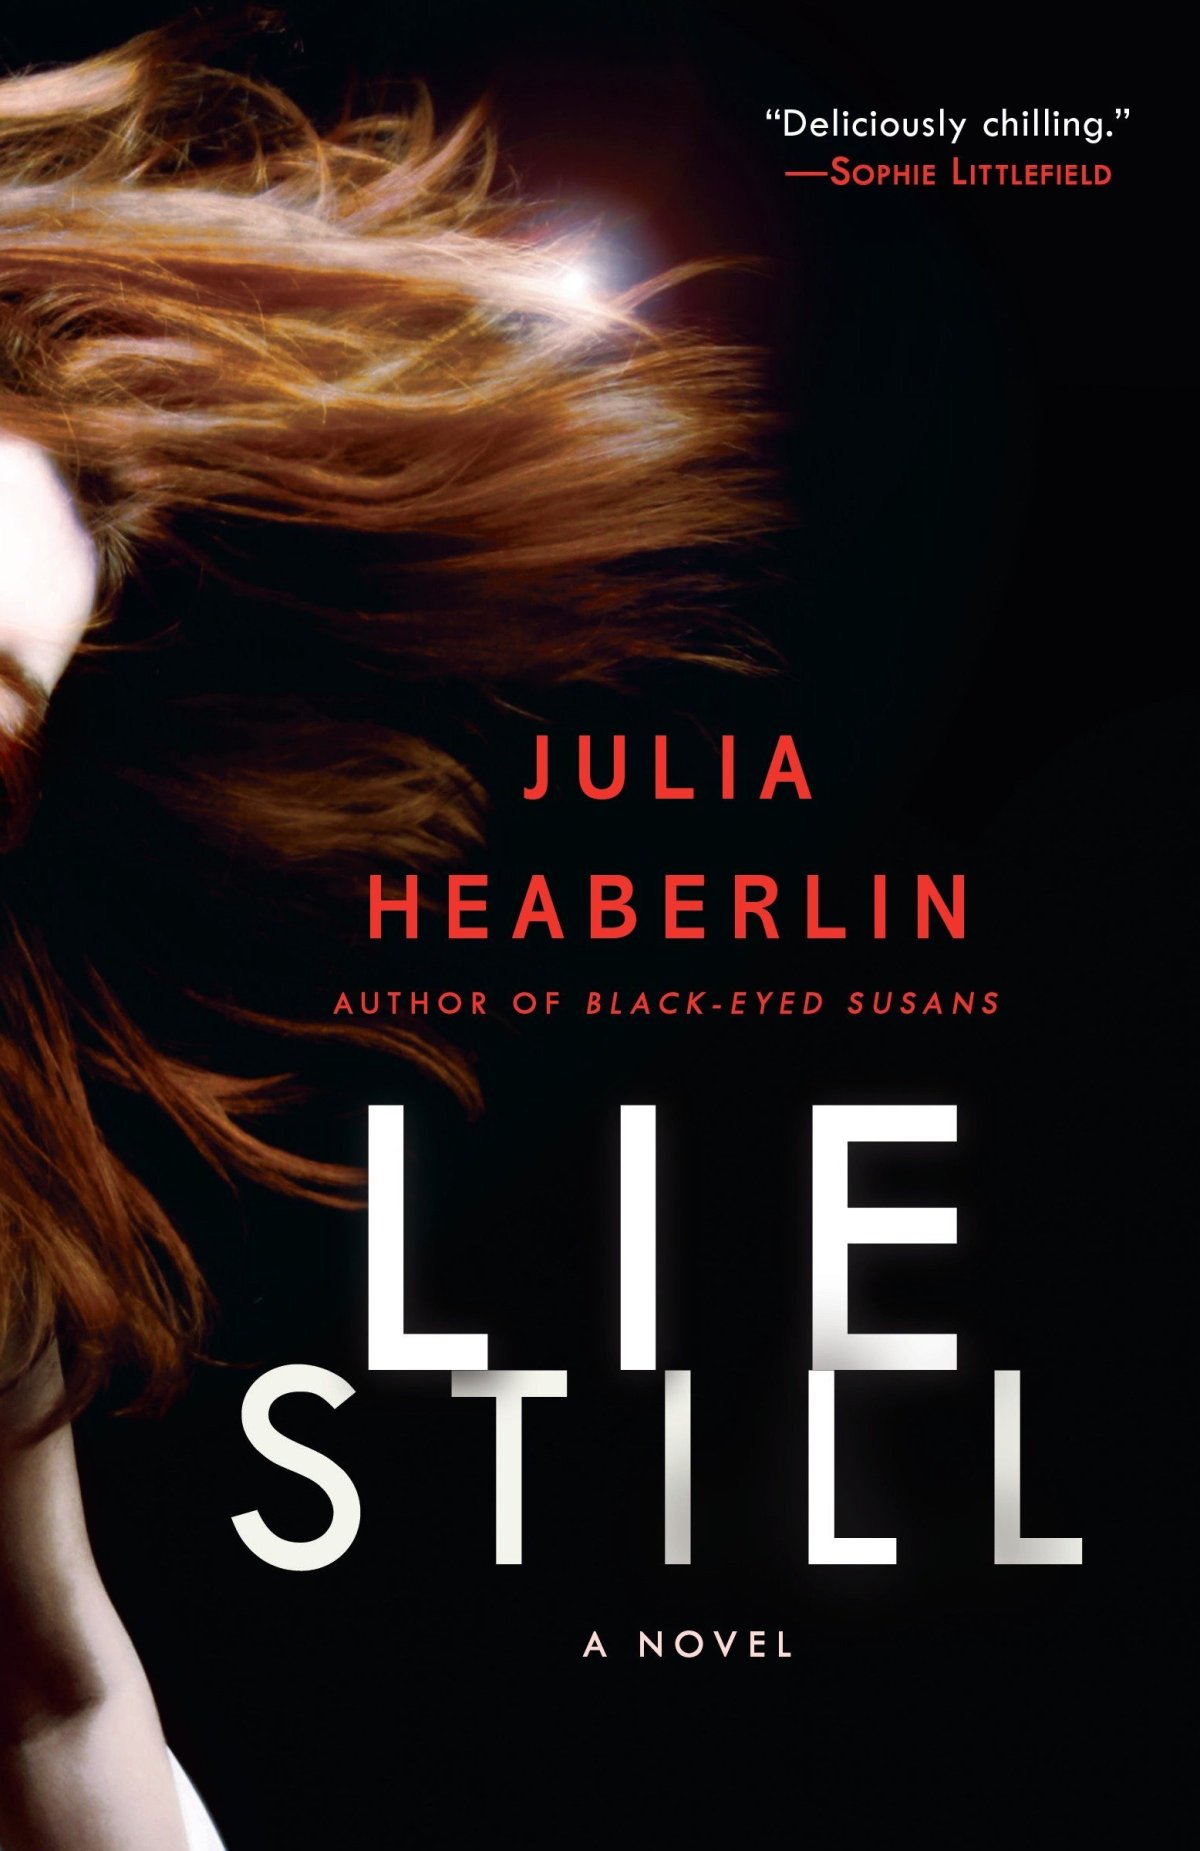 Book 152 – Lie Still by Julia Heaberlin